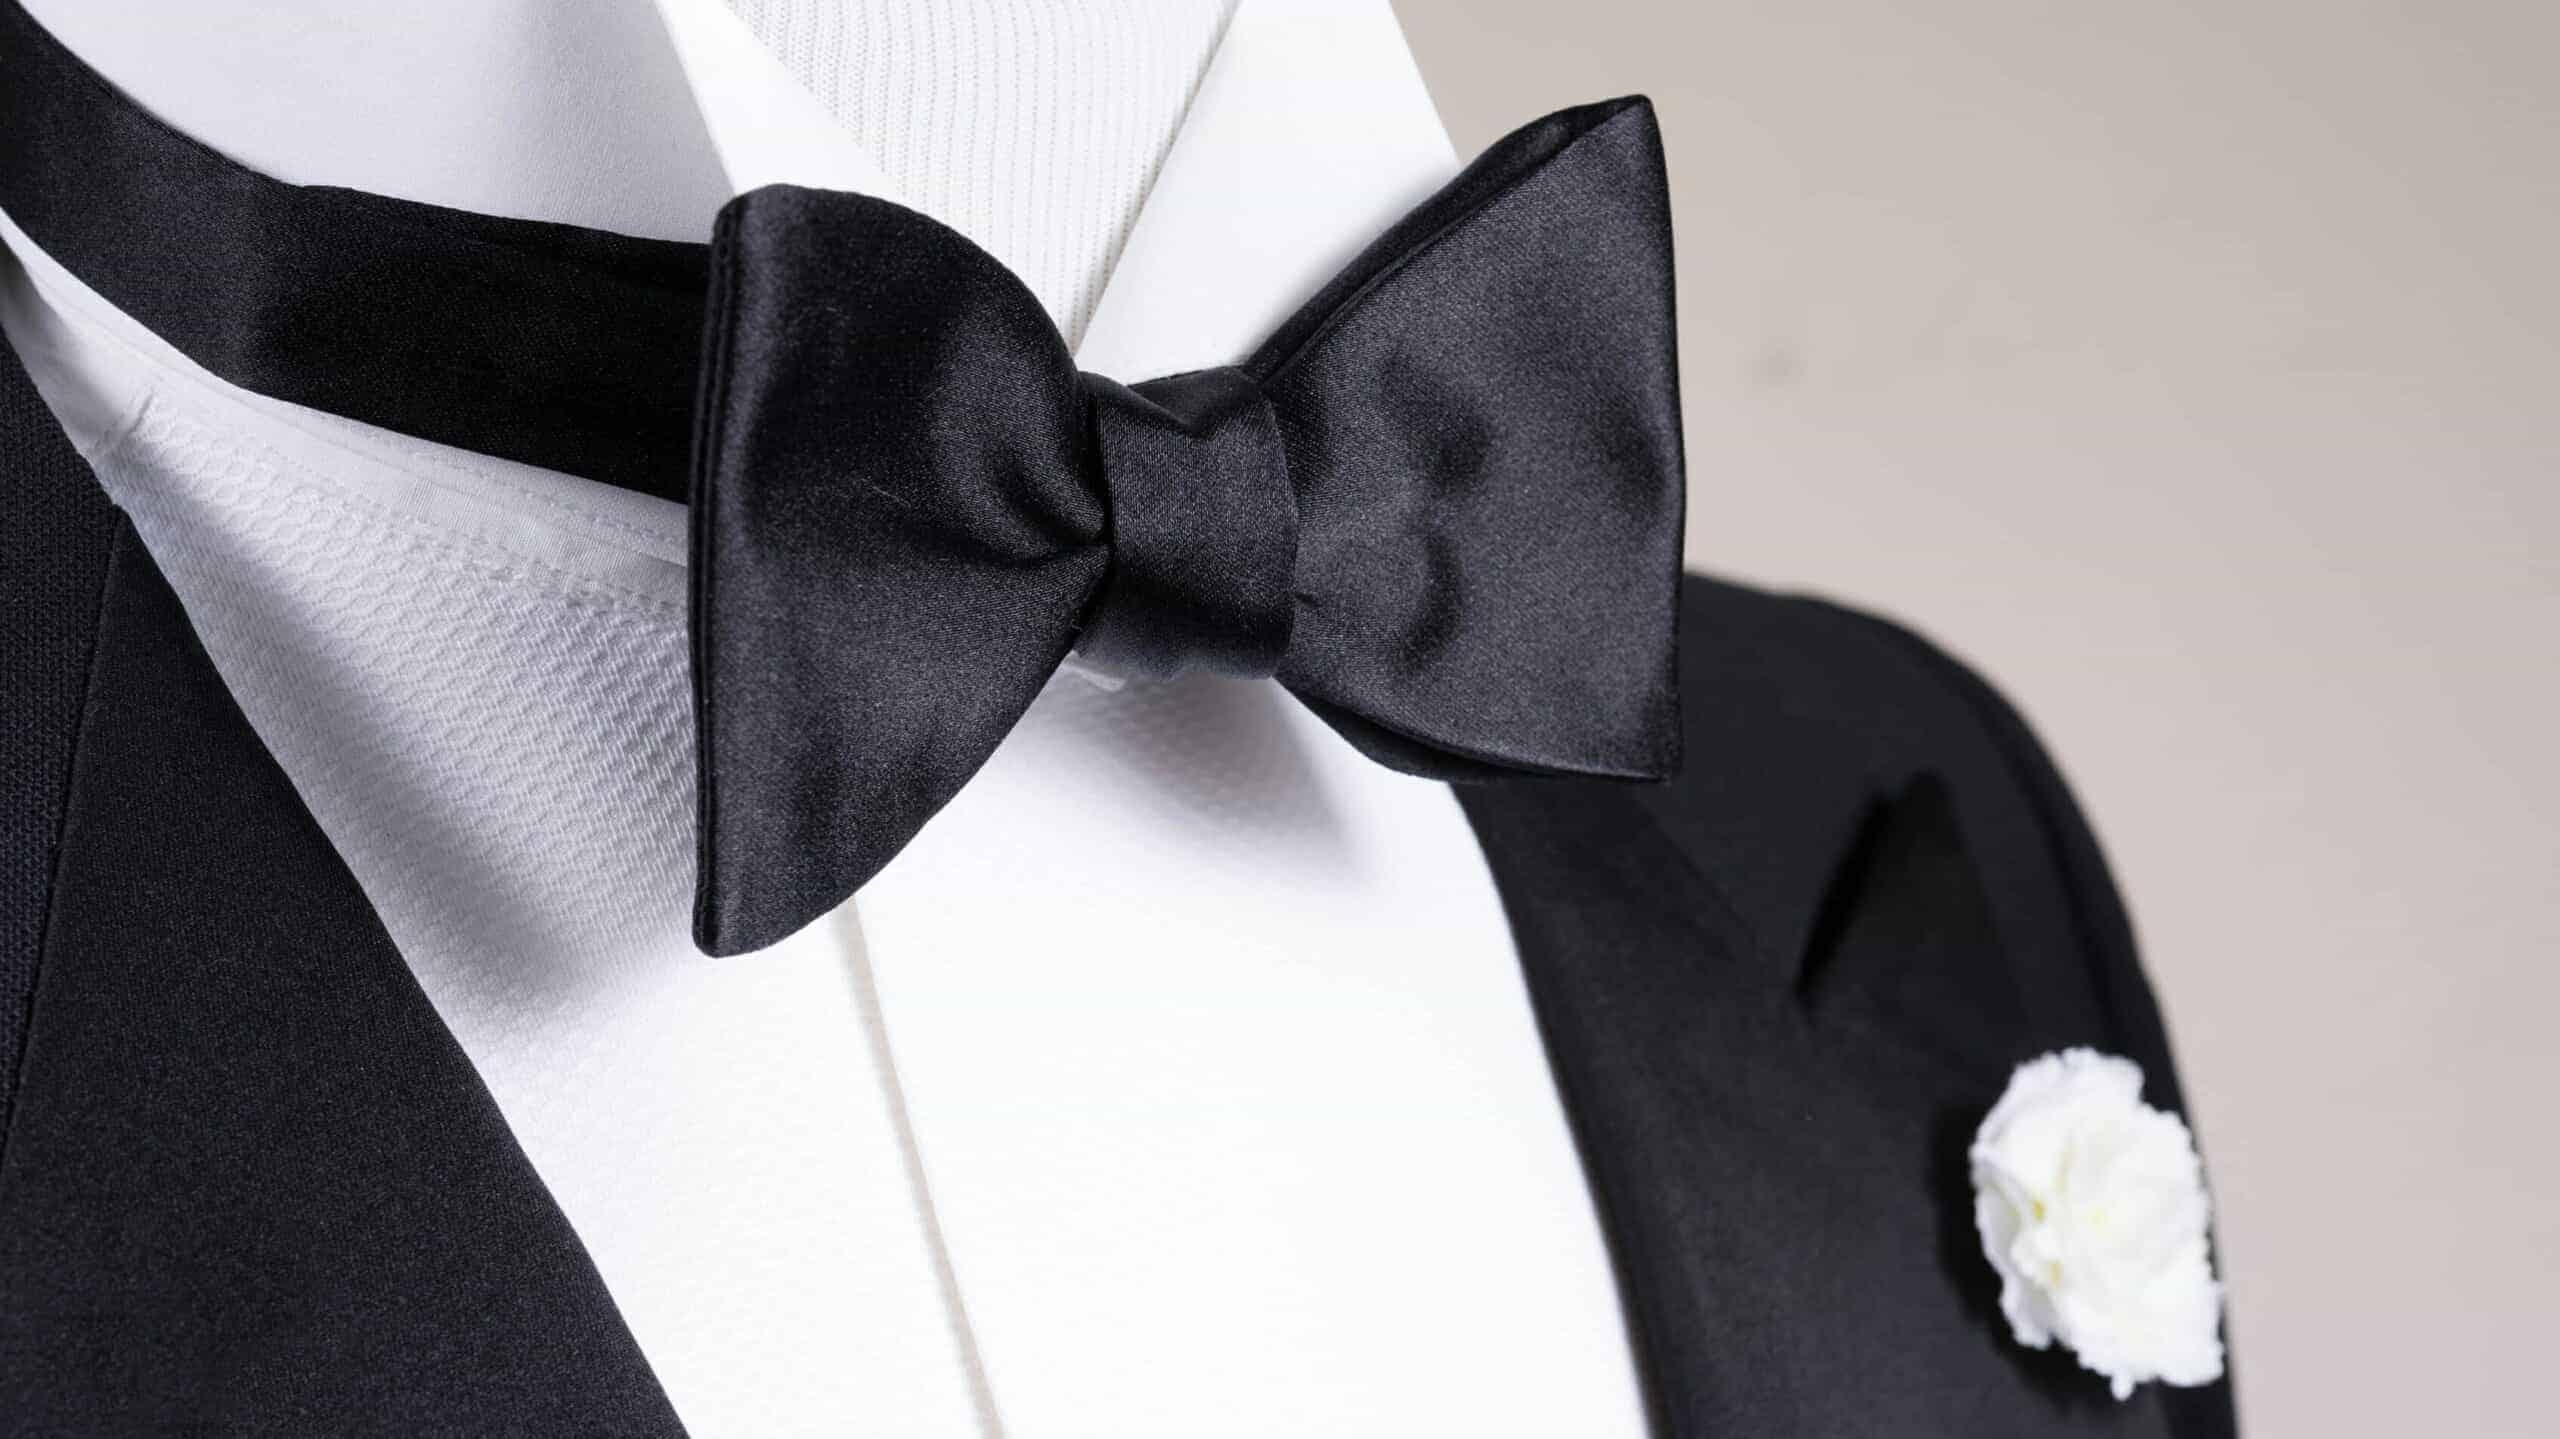 Tie, How to tie, Bow tie, Fashion advice, 2560x1440 HD Desktop